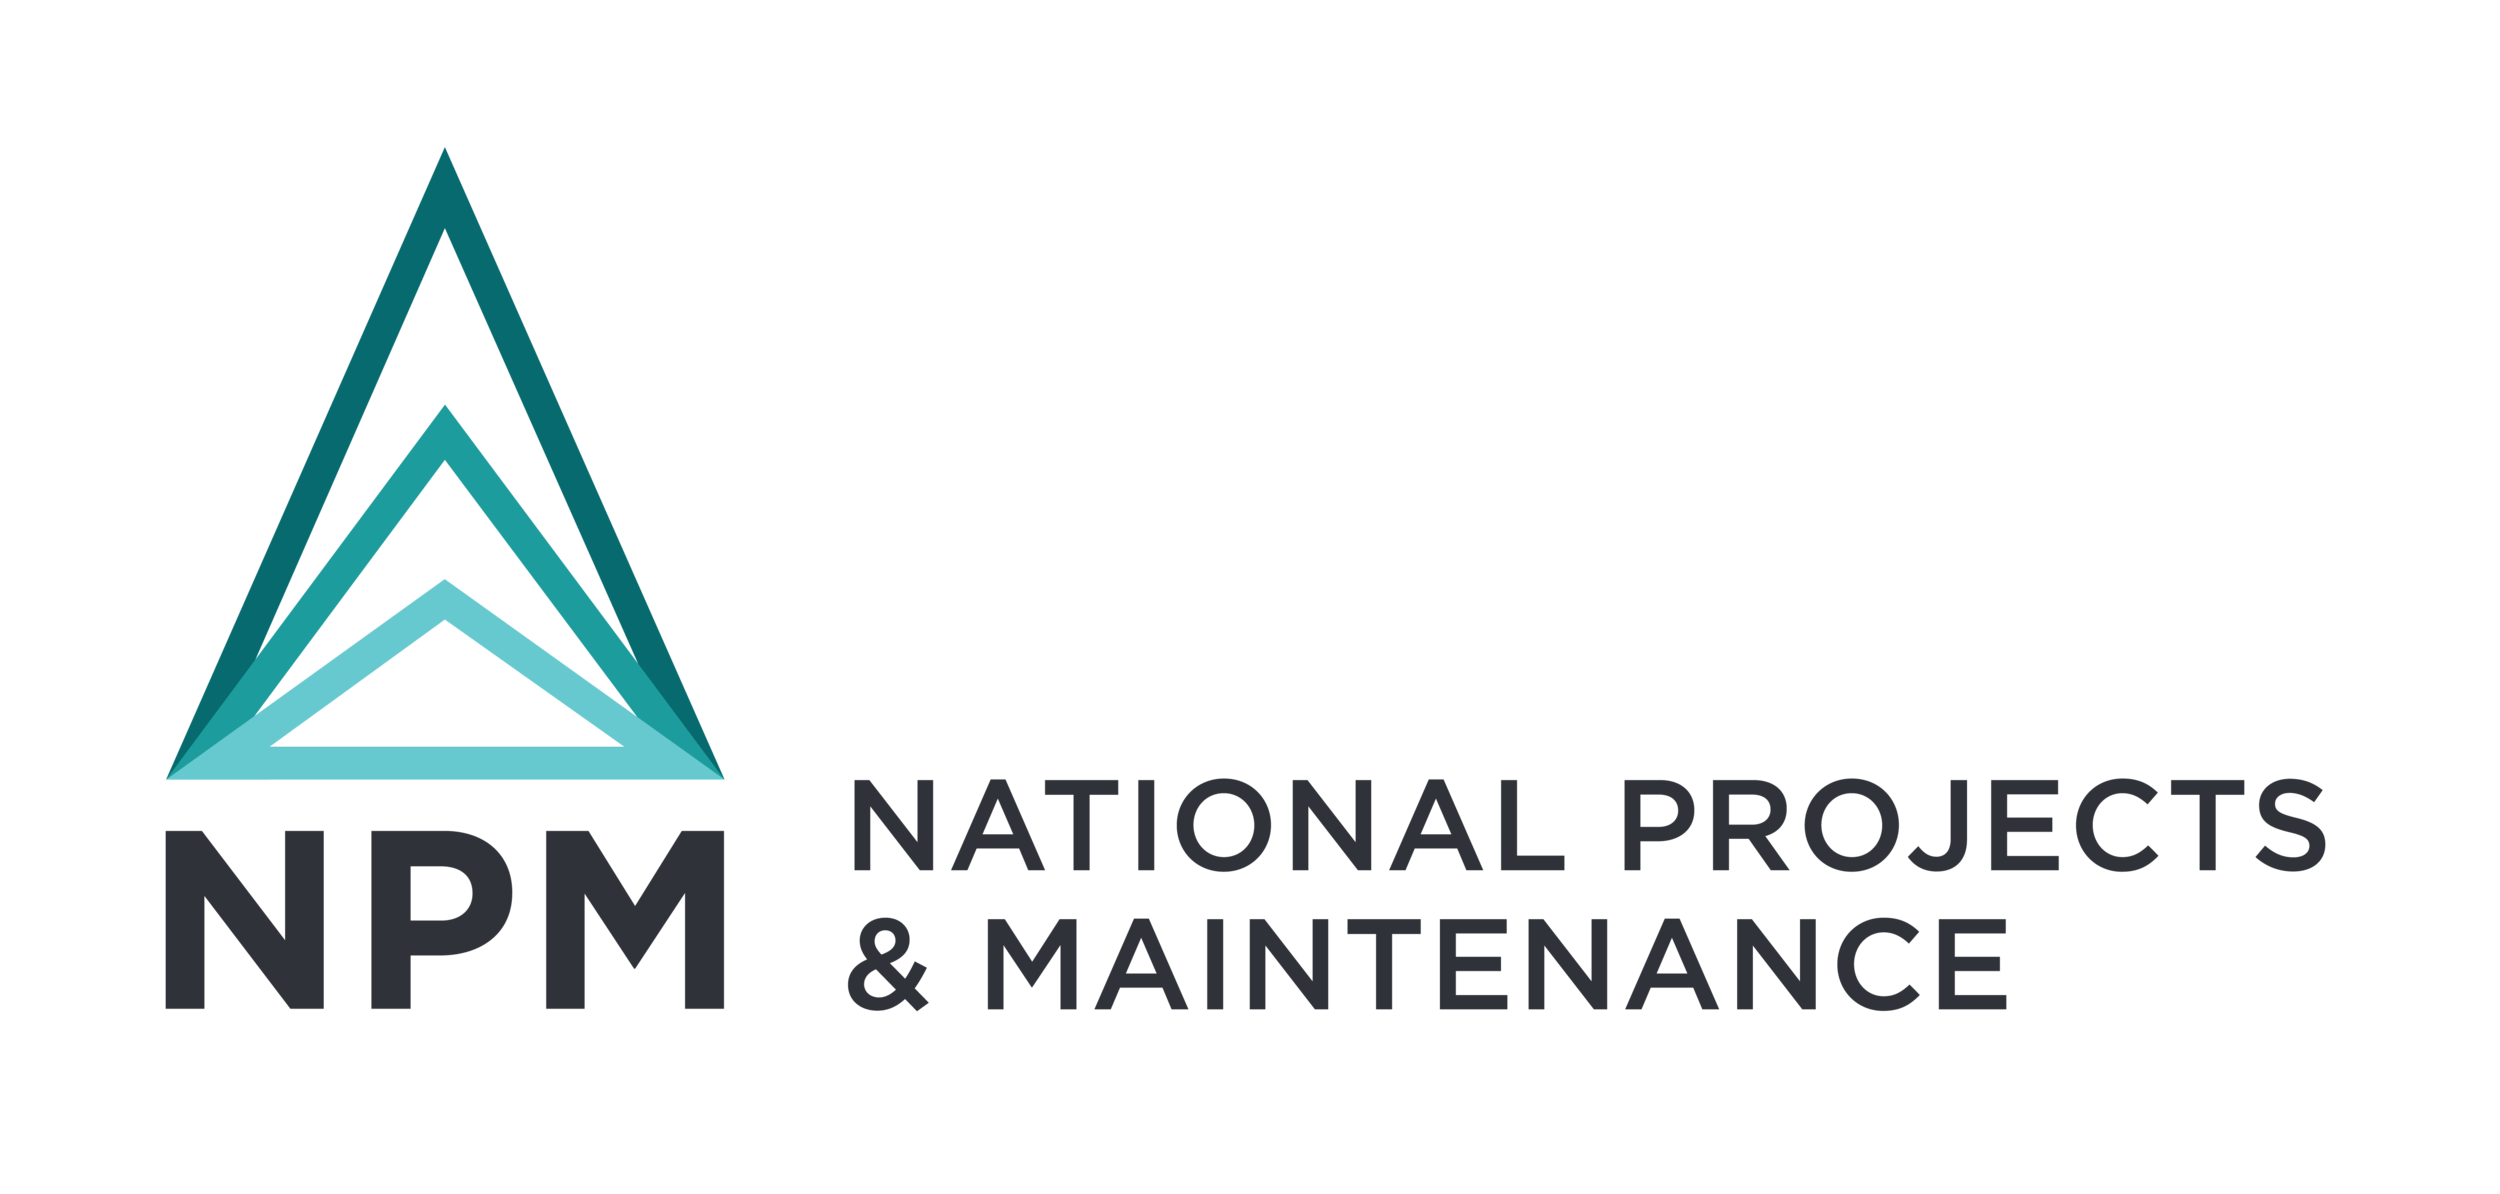 NPM_logo-01.png